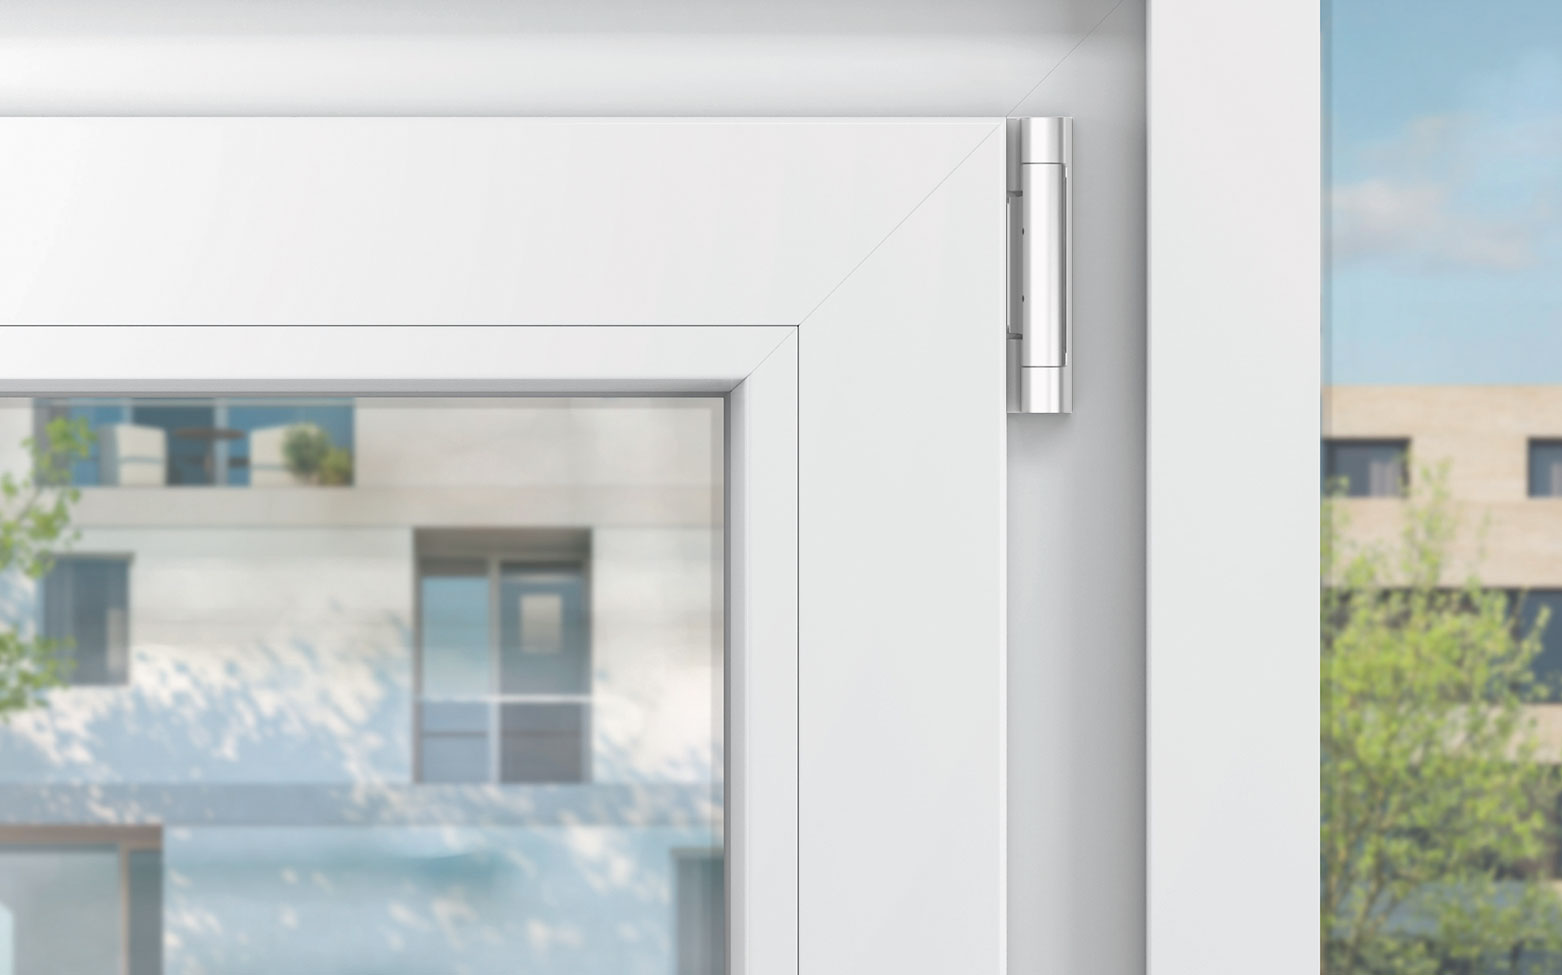 Mit dem verbesserten Drehkipp-Beschlagsystem sorgt die Fenstertechnik brand GmbH in Zukunft für mehr Sicherheit, höheren Komfort und moderneres Design bei seinen Kunststofffenstern.